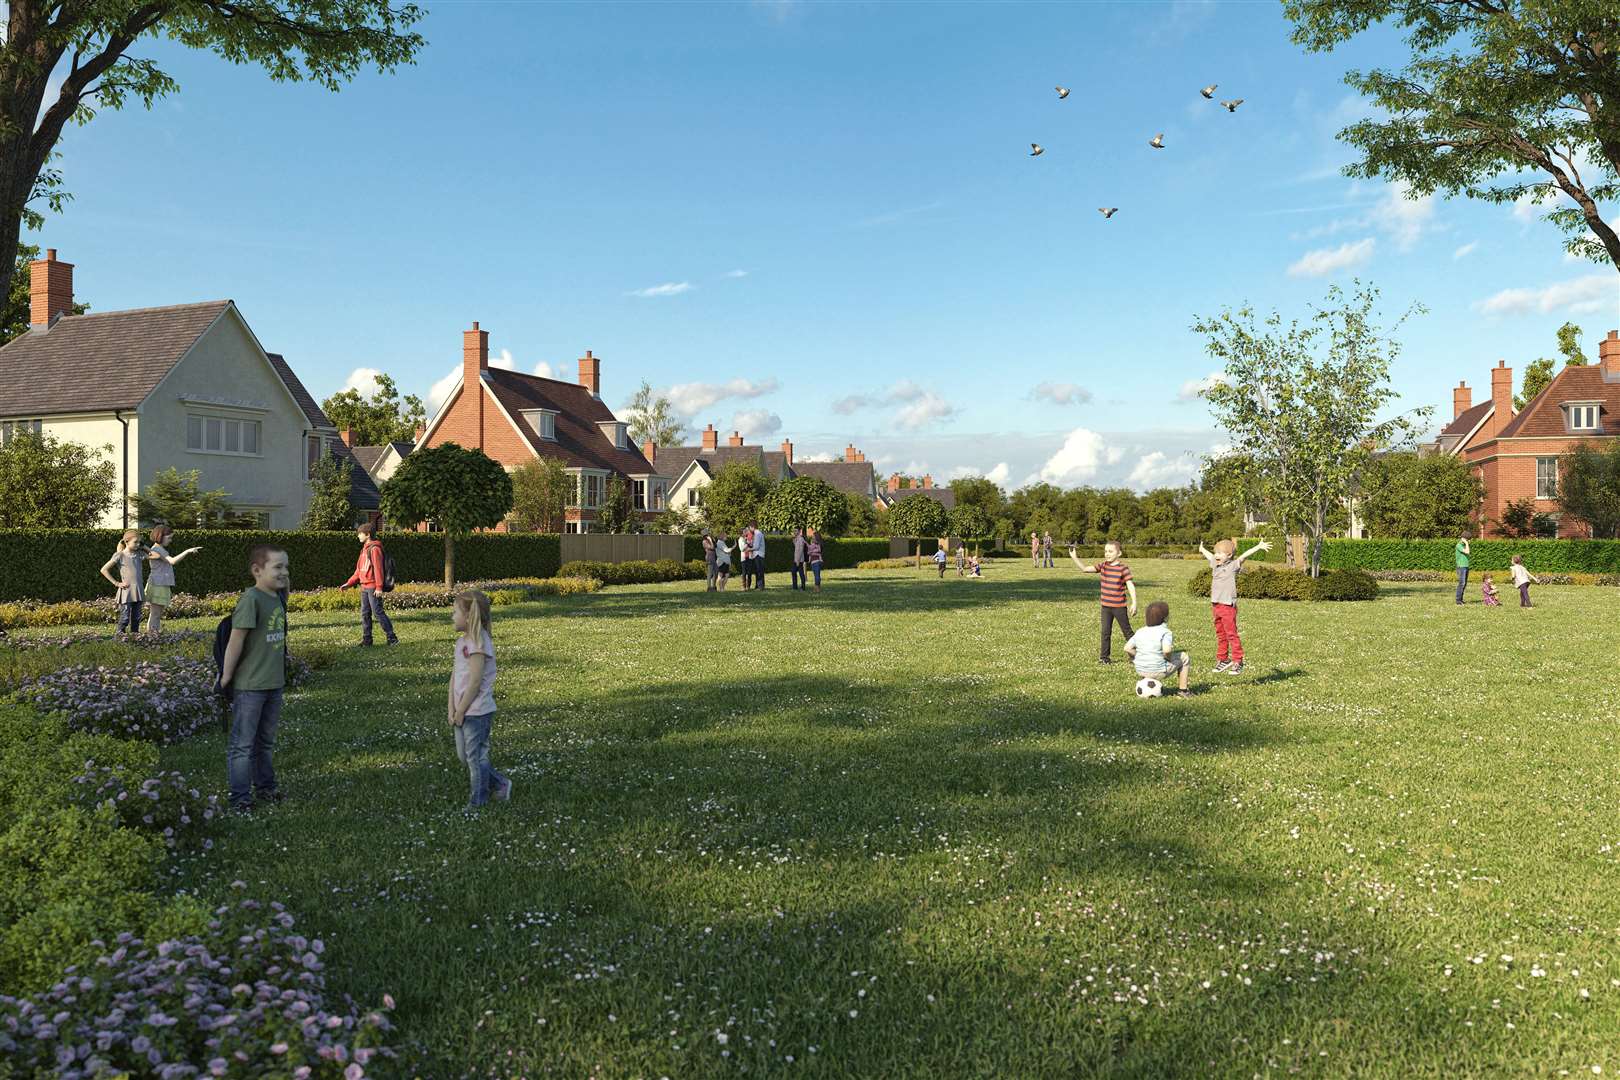 An artist's impression of what Binbury Garden Village will look like